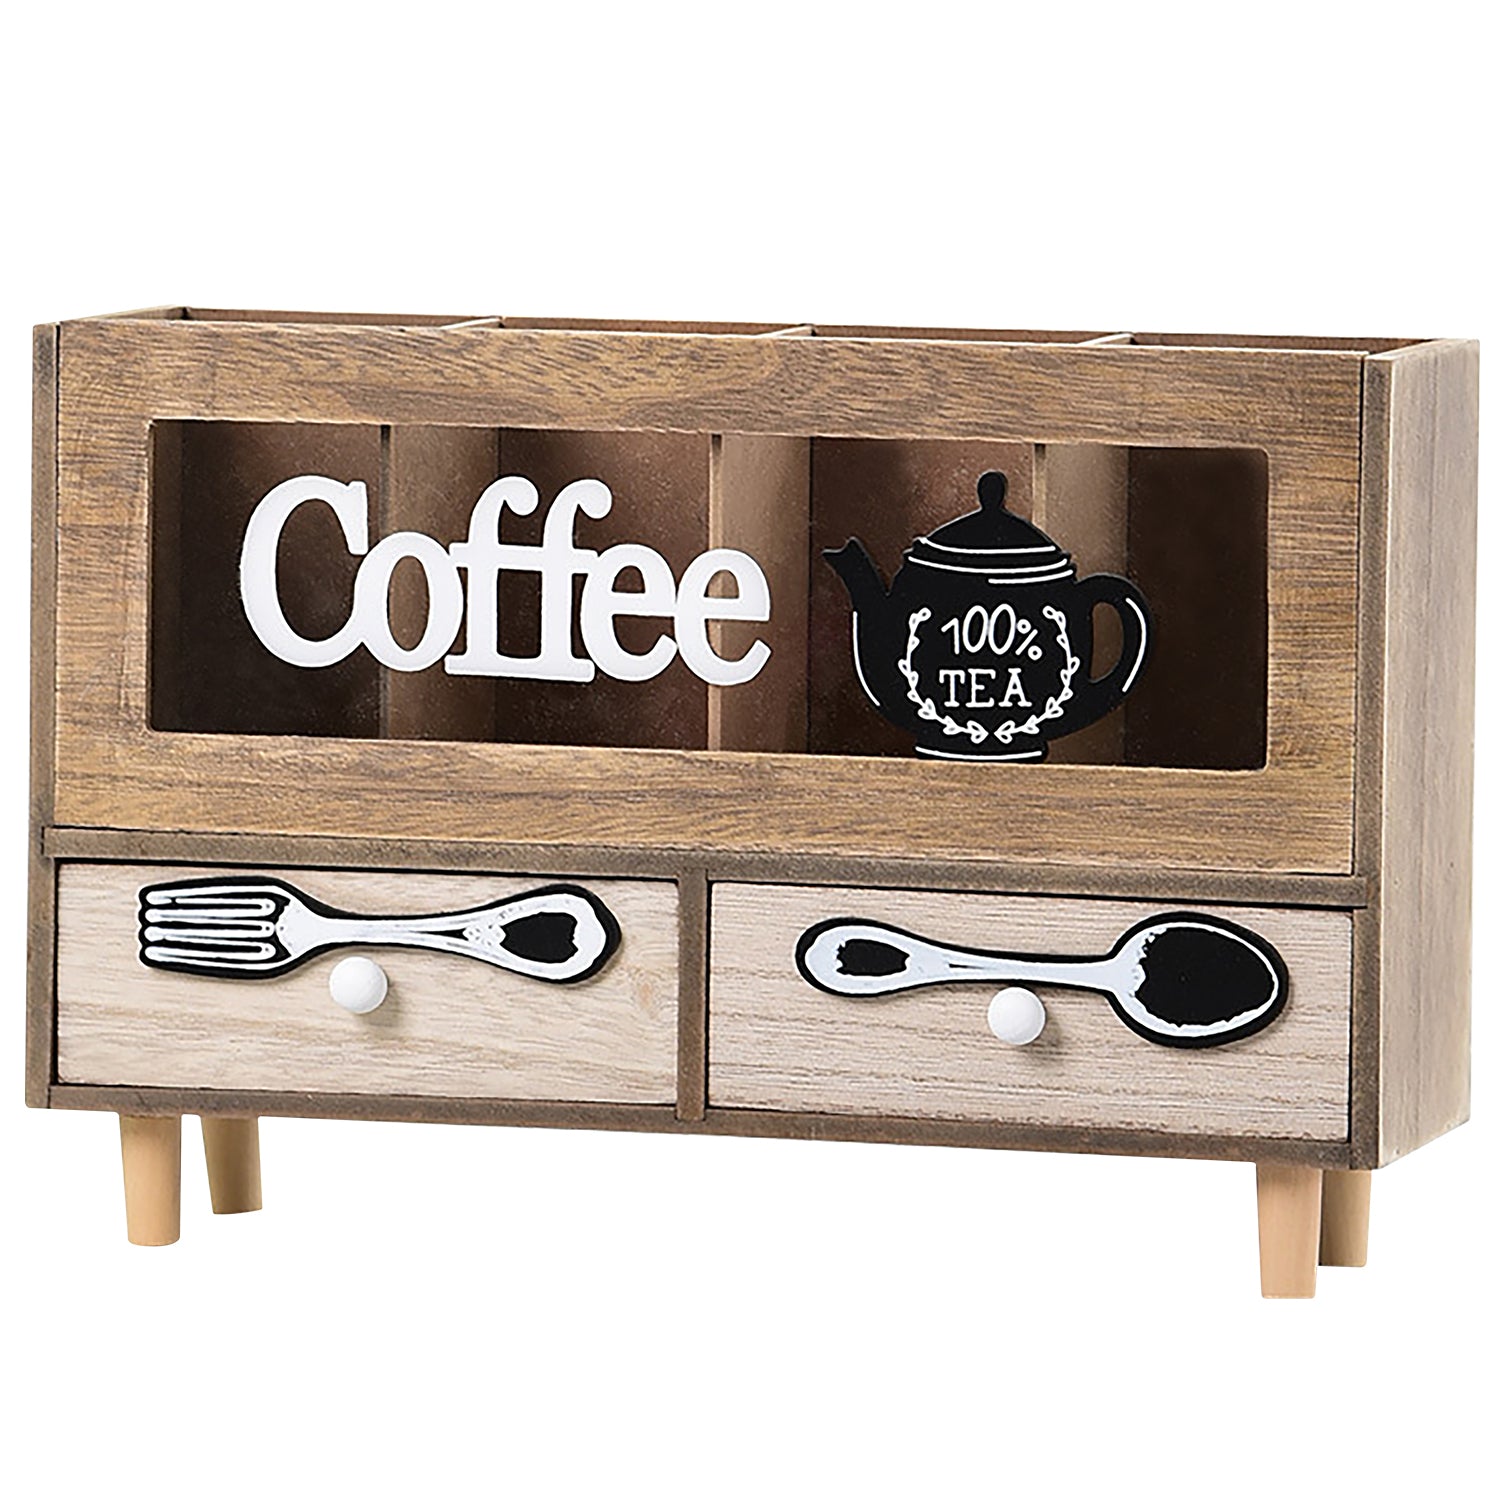 Wooden Coffee Station Organizer, Coffee Bar Accessories Organizer